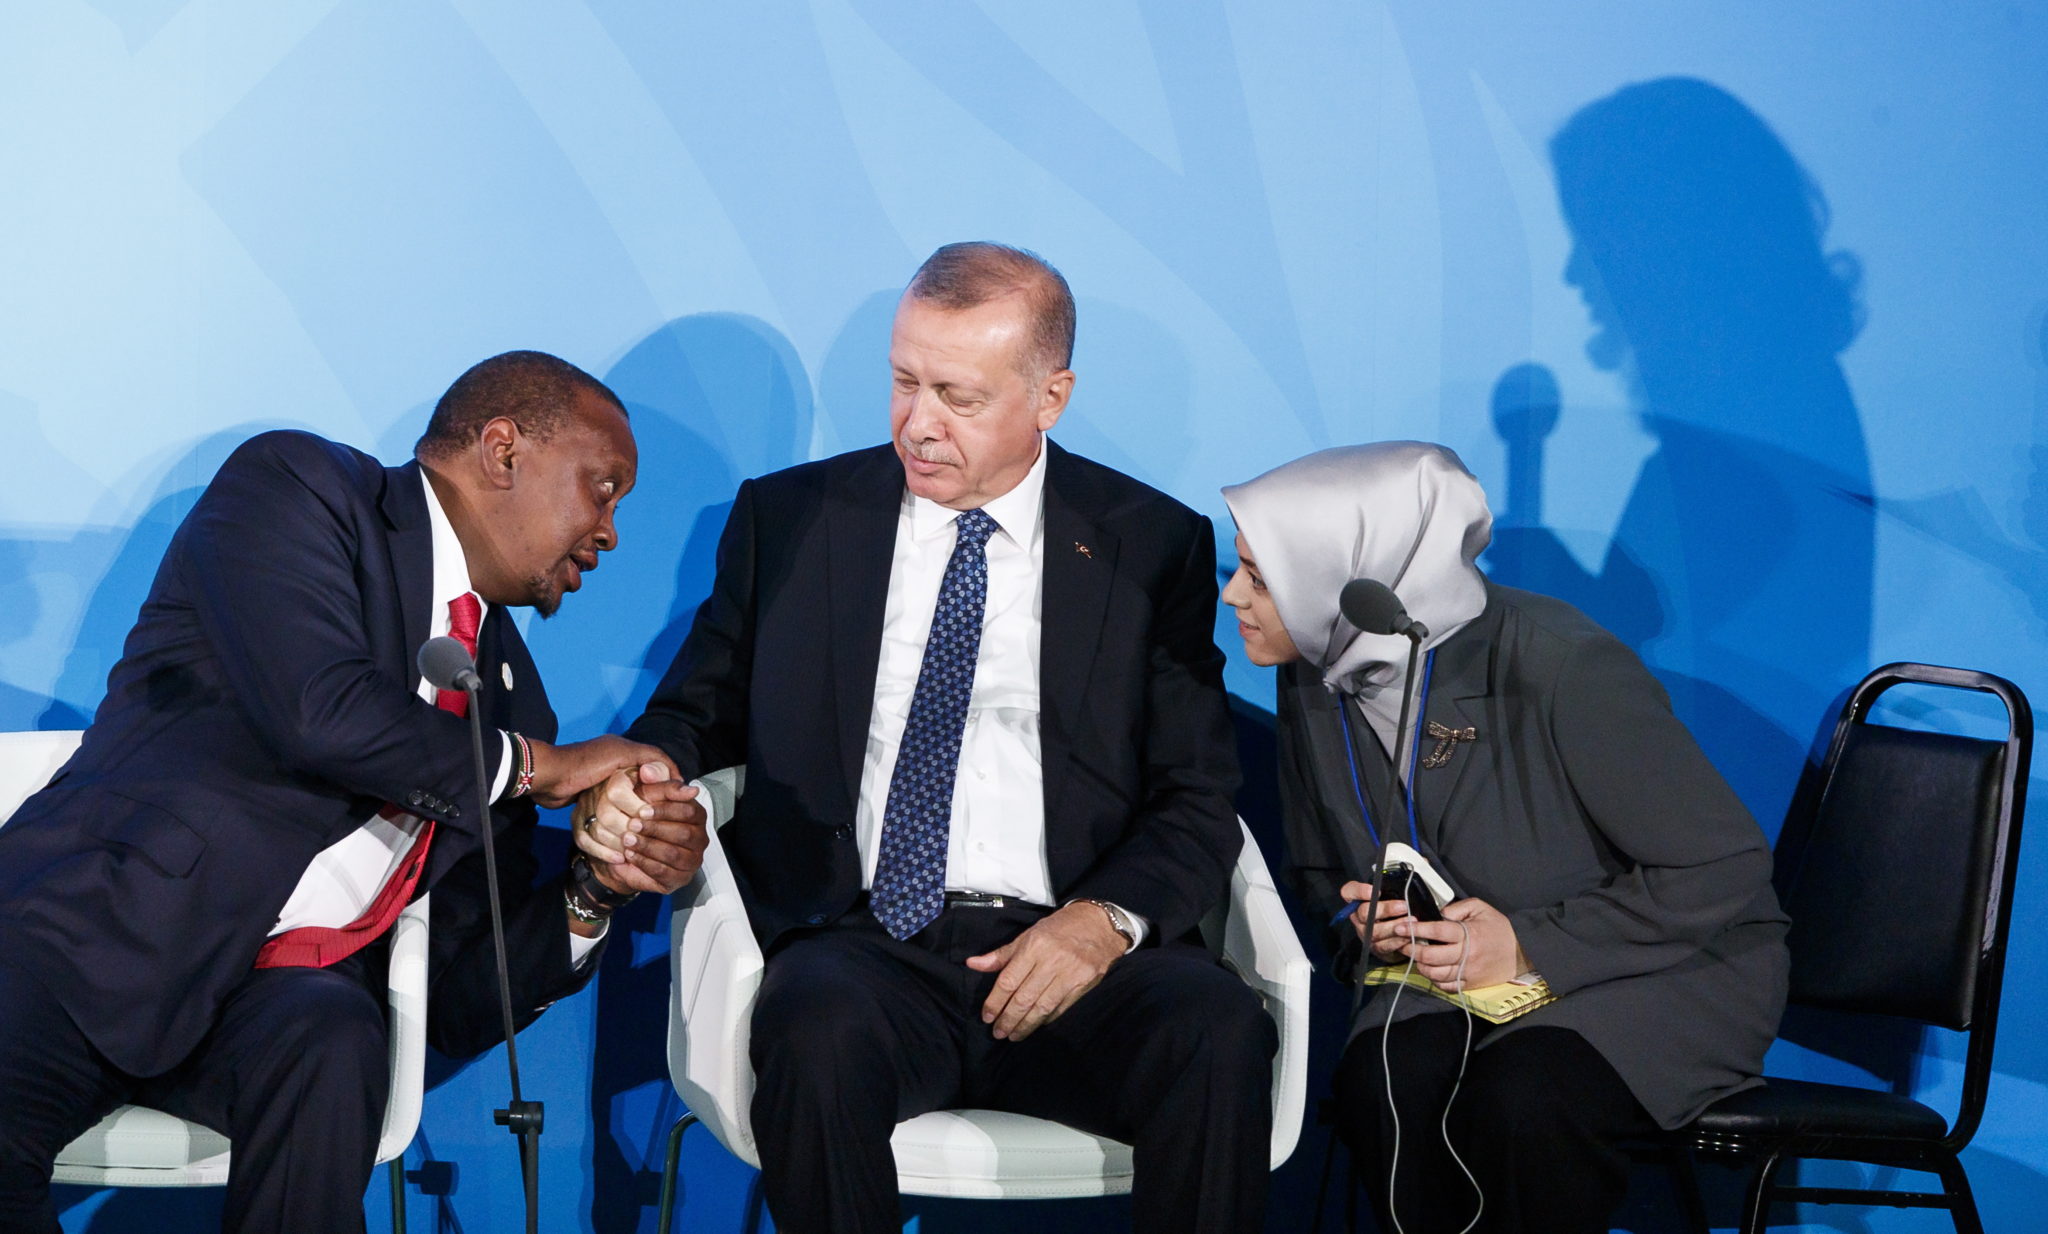 Nowy Jork: początek szczytu klimatycznego ONZ, na zdjęciu: prezydent Kenii Uhuru Kenyatta, prezydent Turcji  Recep Tayyip Erdogan oraz tłumaczka, fot. JUSTIN LANE, PAP/EPA 